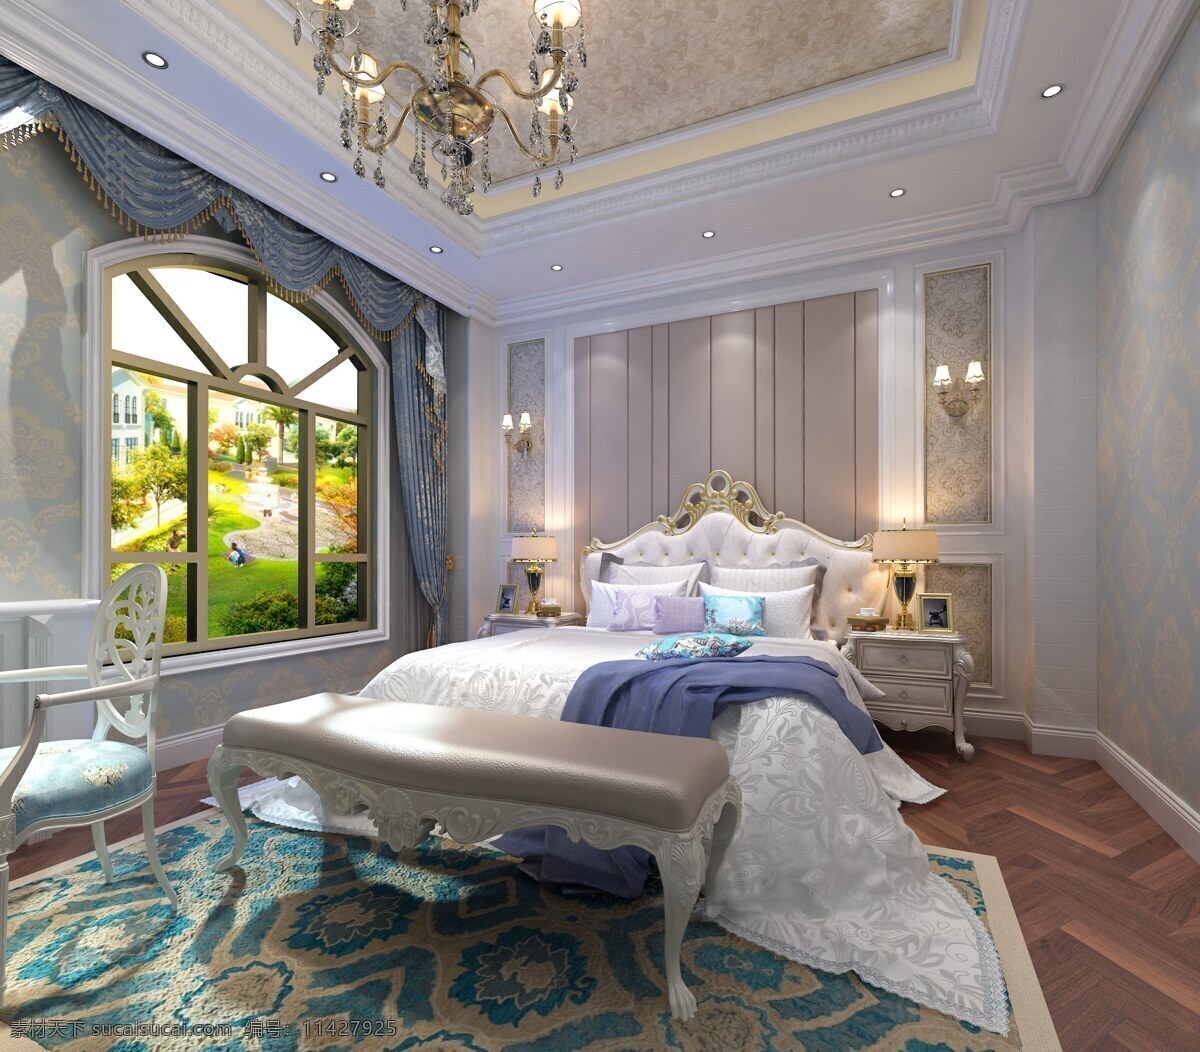 法式 美式 风格 卧室 房间 效果图 简欧 3d设计 3d作品